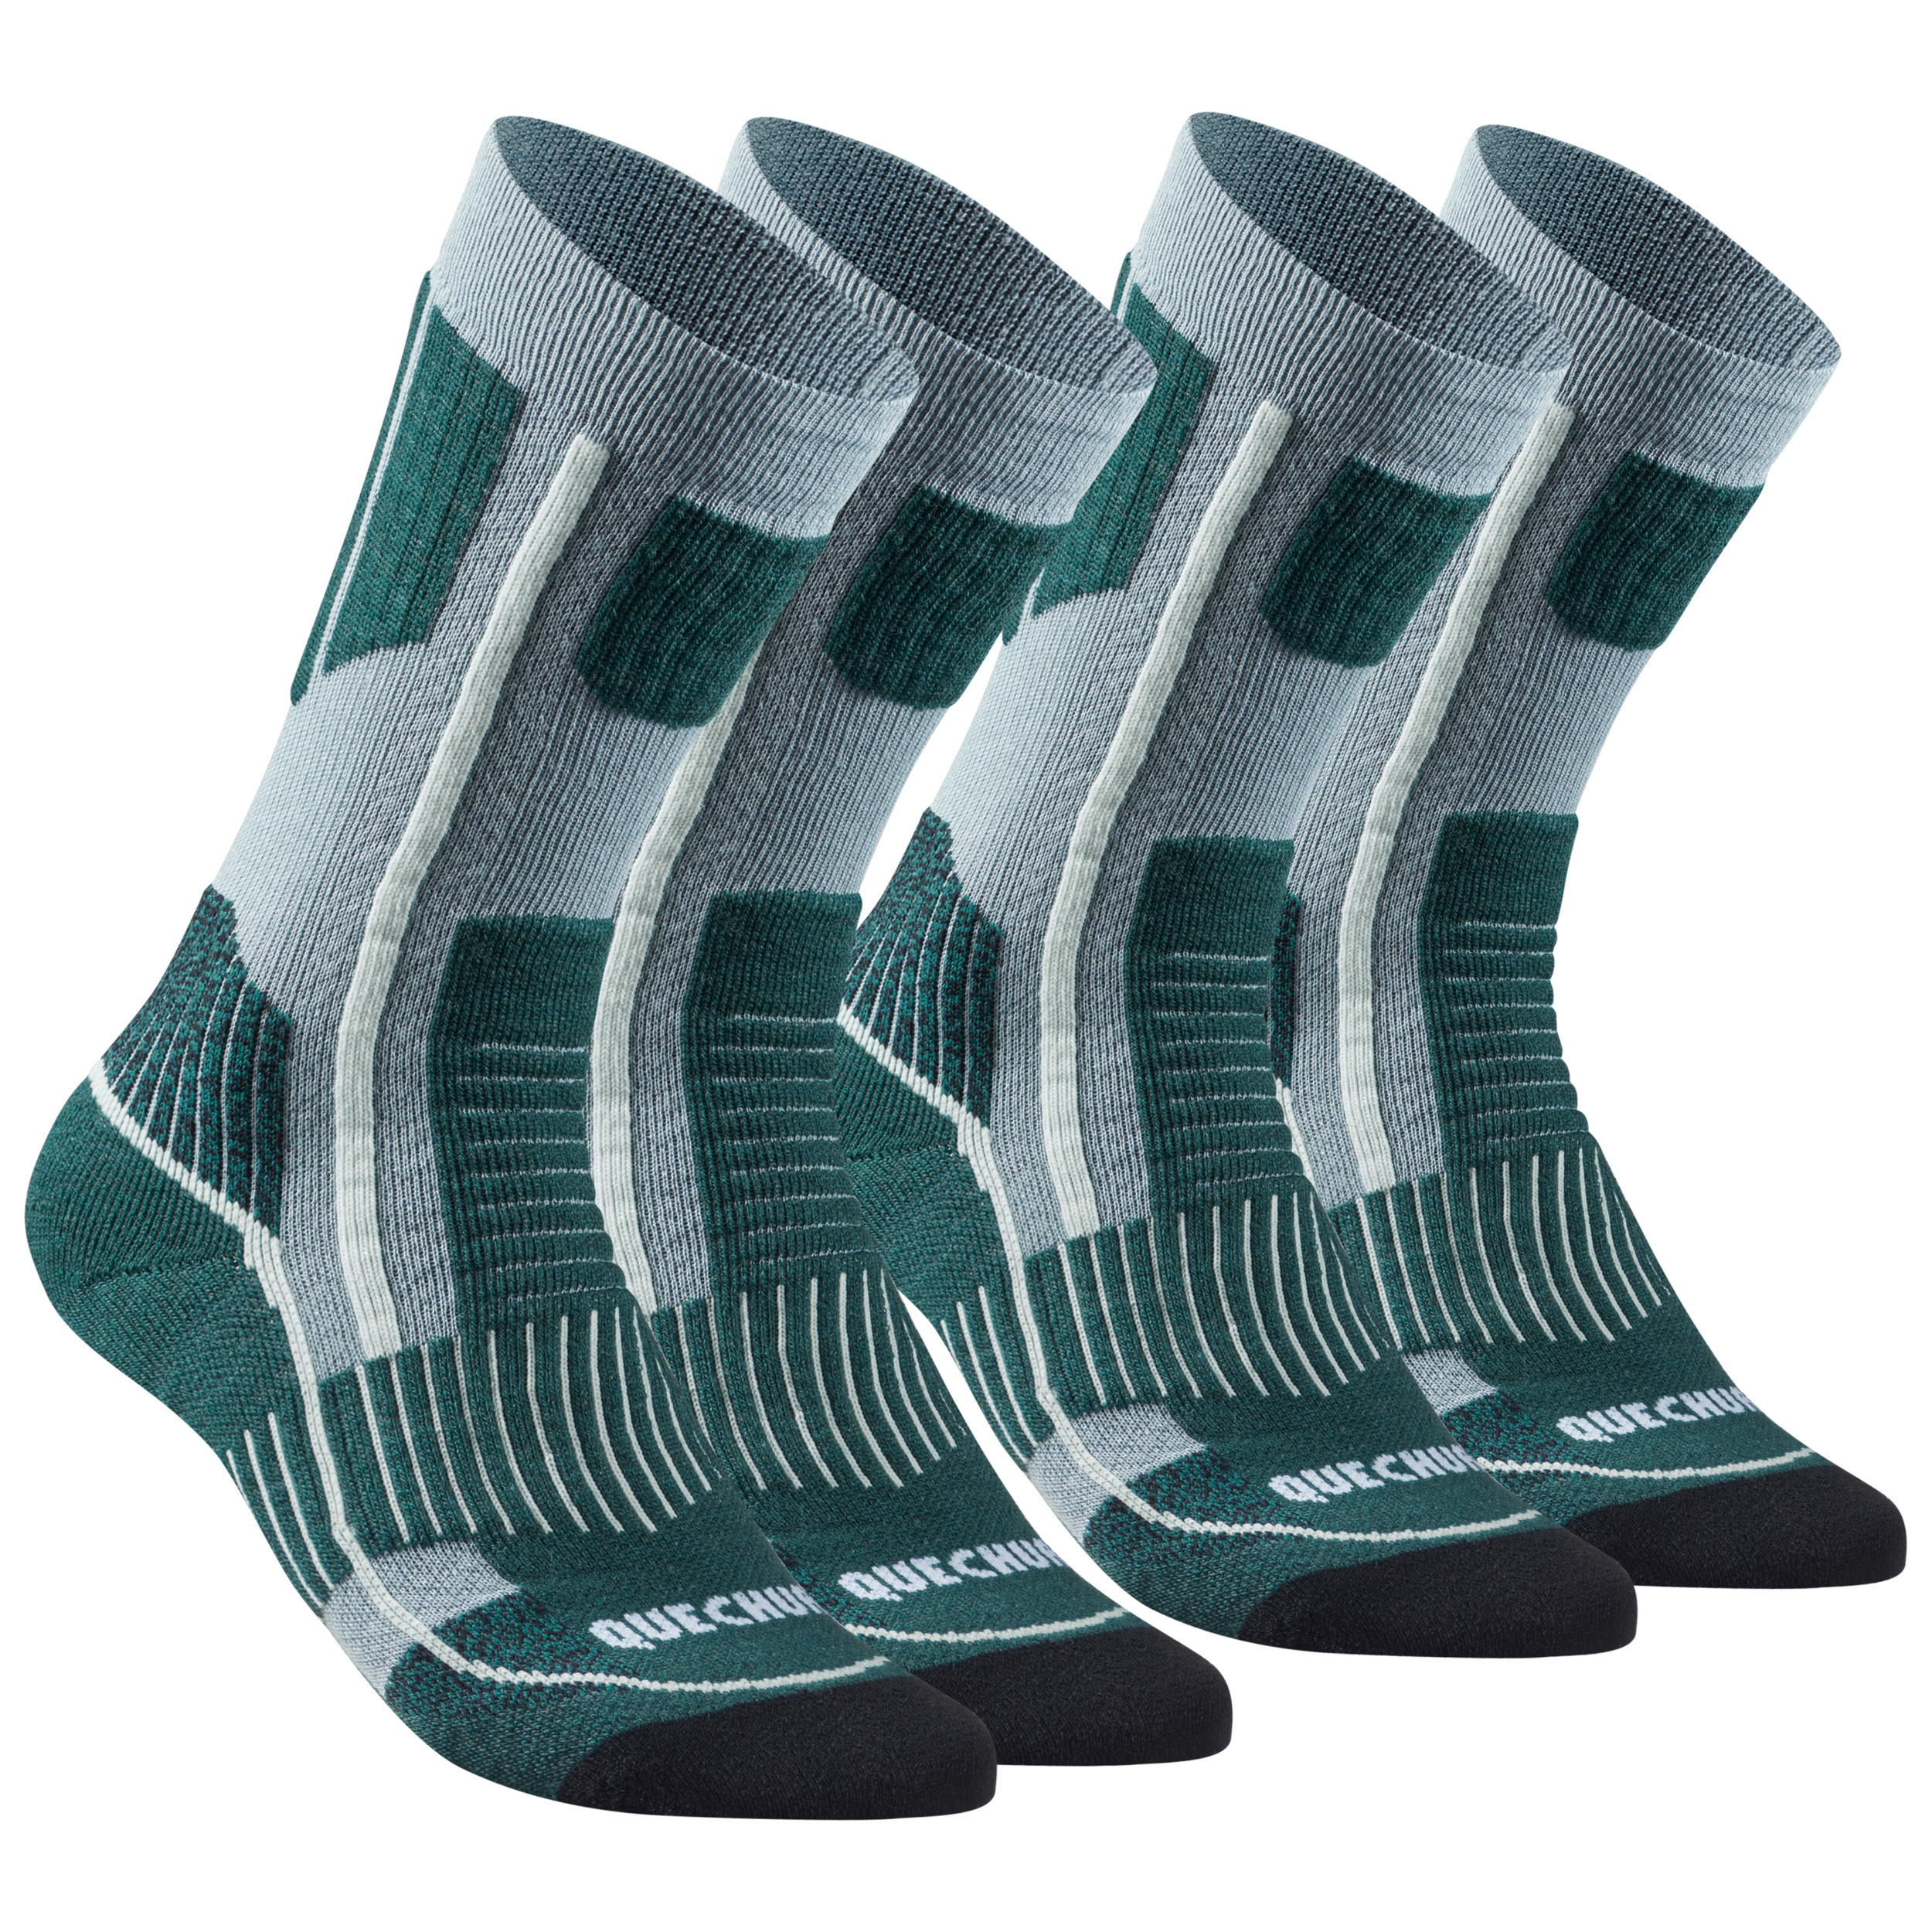 QUECHUA Warm Hiking Socks - SH520 X-WARM MID - 2 Pairs